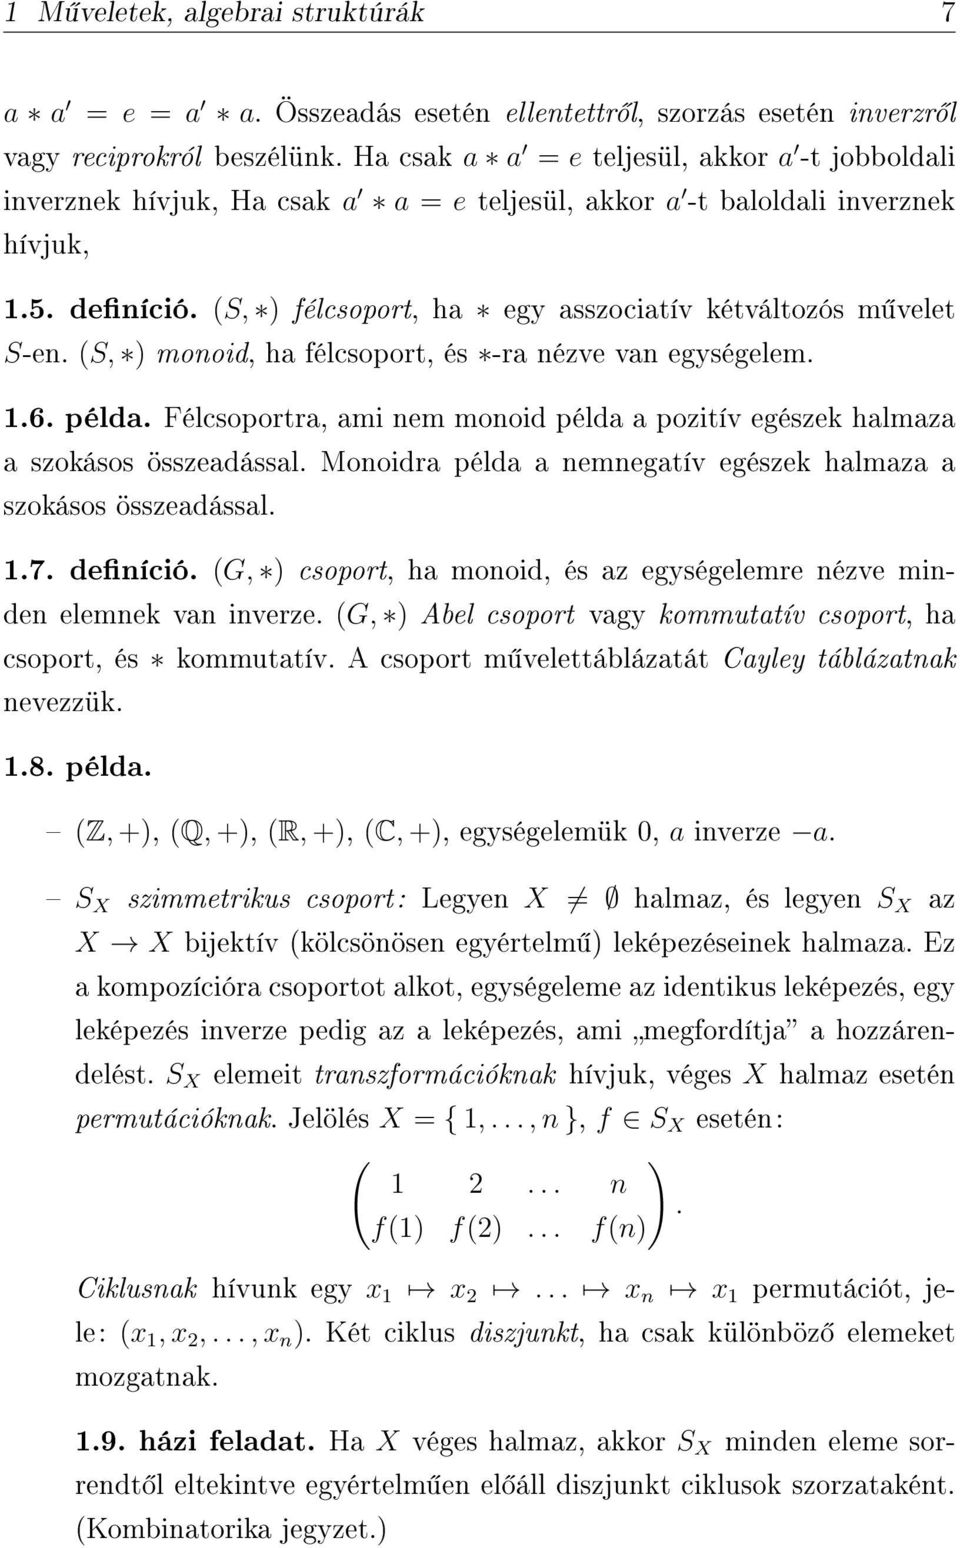 Algebra jegyzet másodéves Matematika BSc hallgatóknak. Horváth Gábor - PDF  Ingyenes letöltés